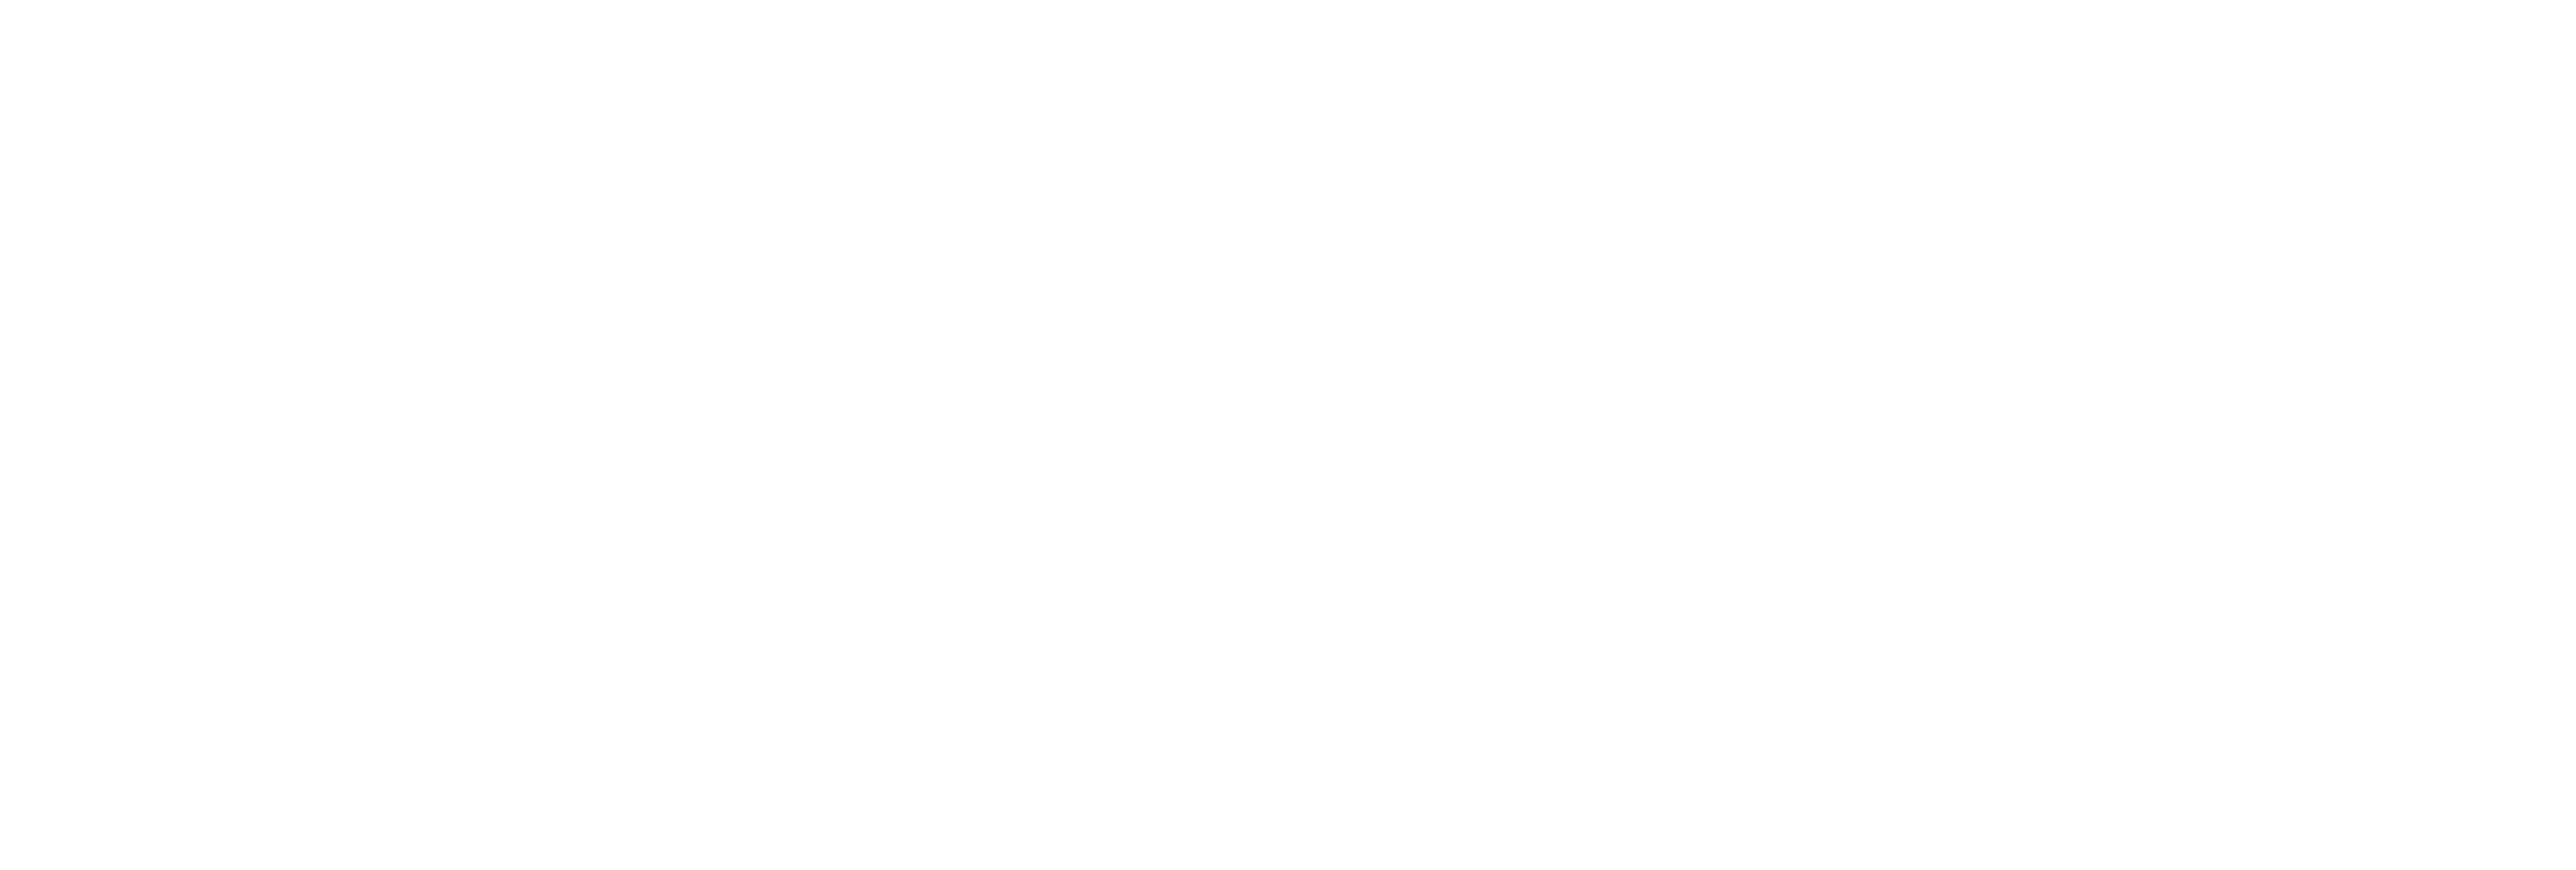 AniCura Walluf GmbH logo